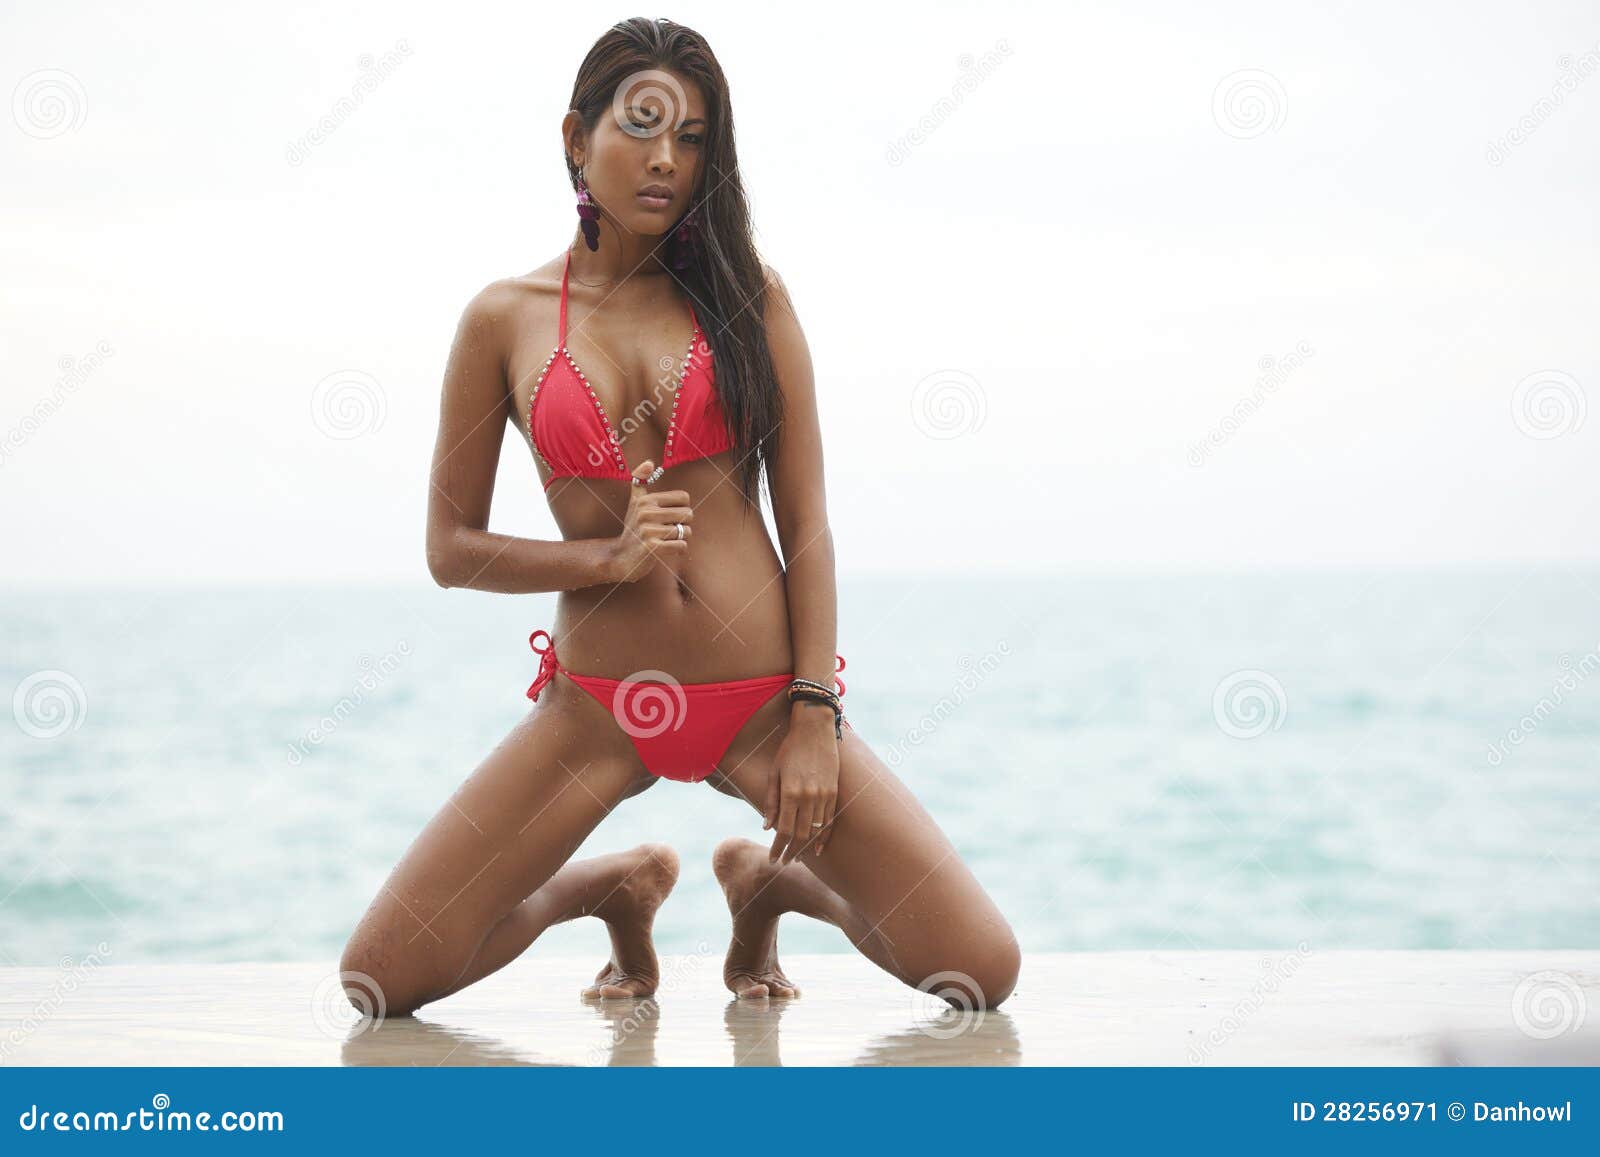 Model bikini woman in